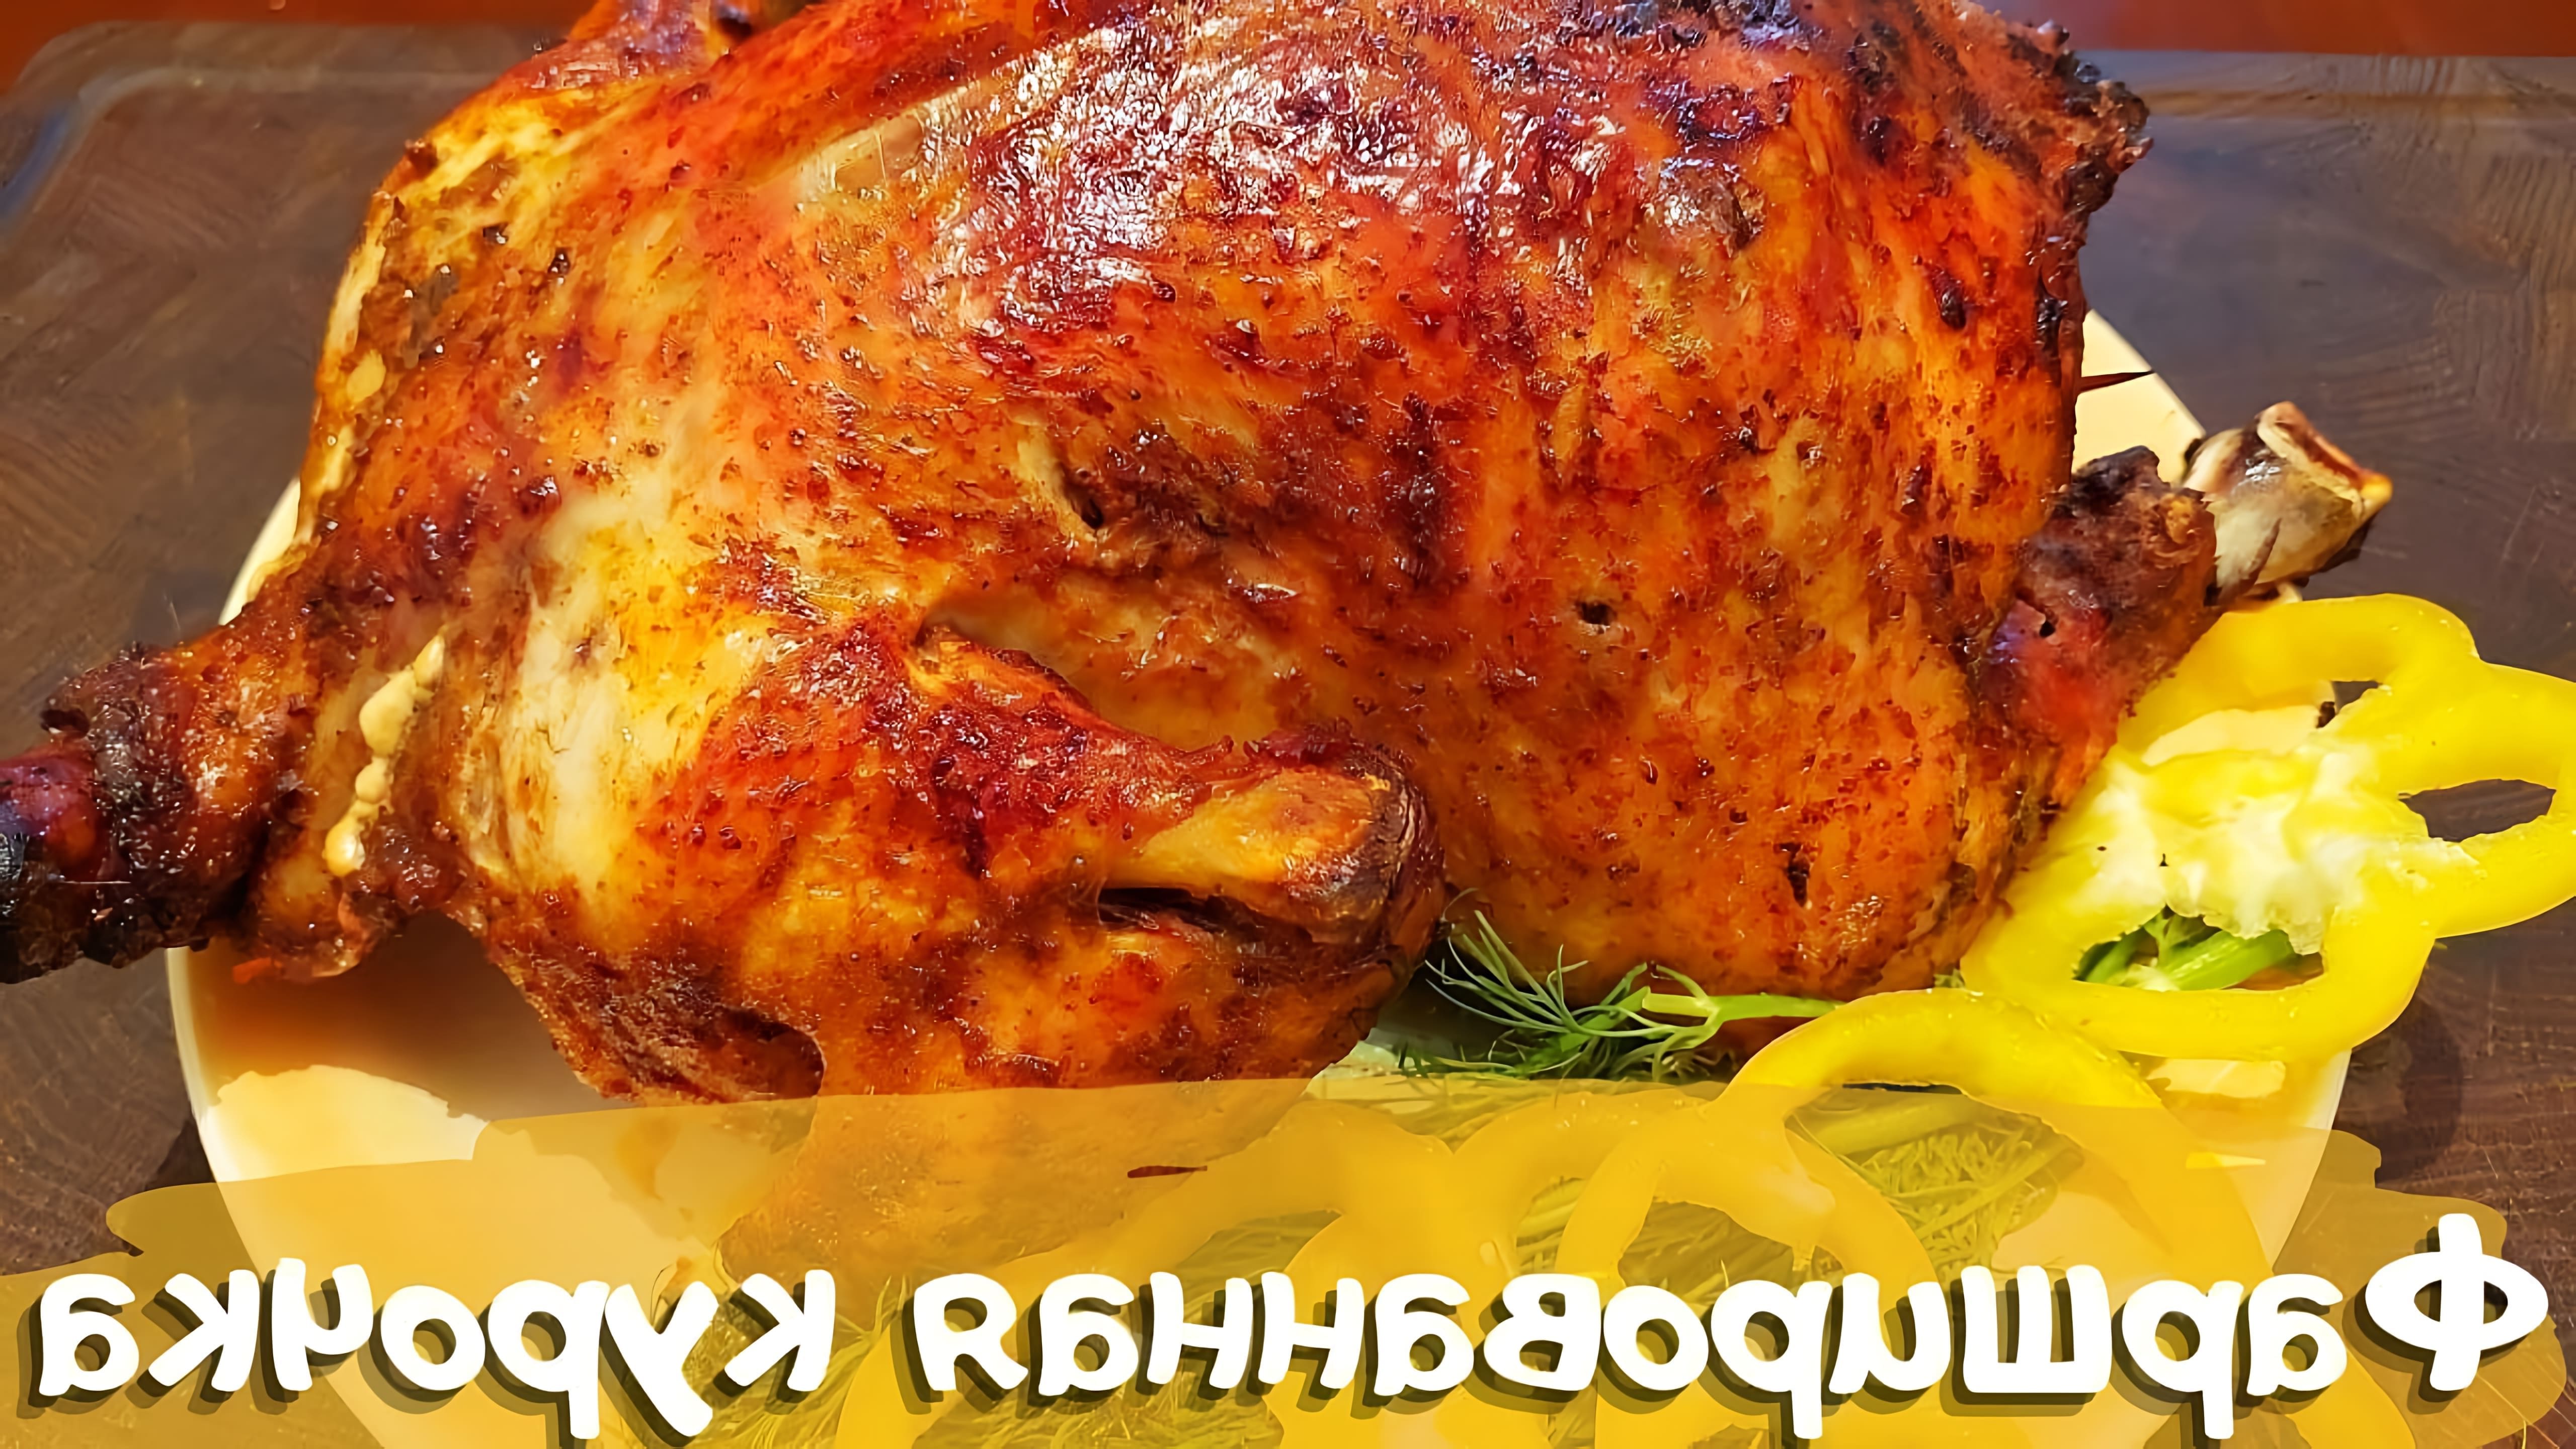 В этом видео демонстрируется процесс приготовления вкусной курицы, фаршированной овощами и запеченной в духовке